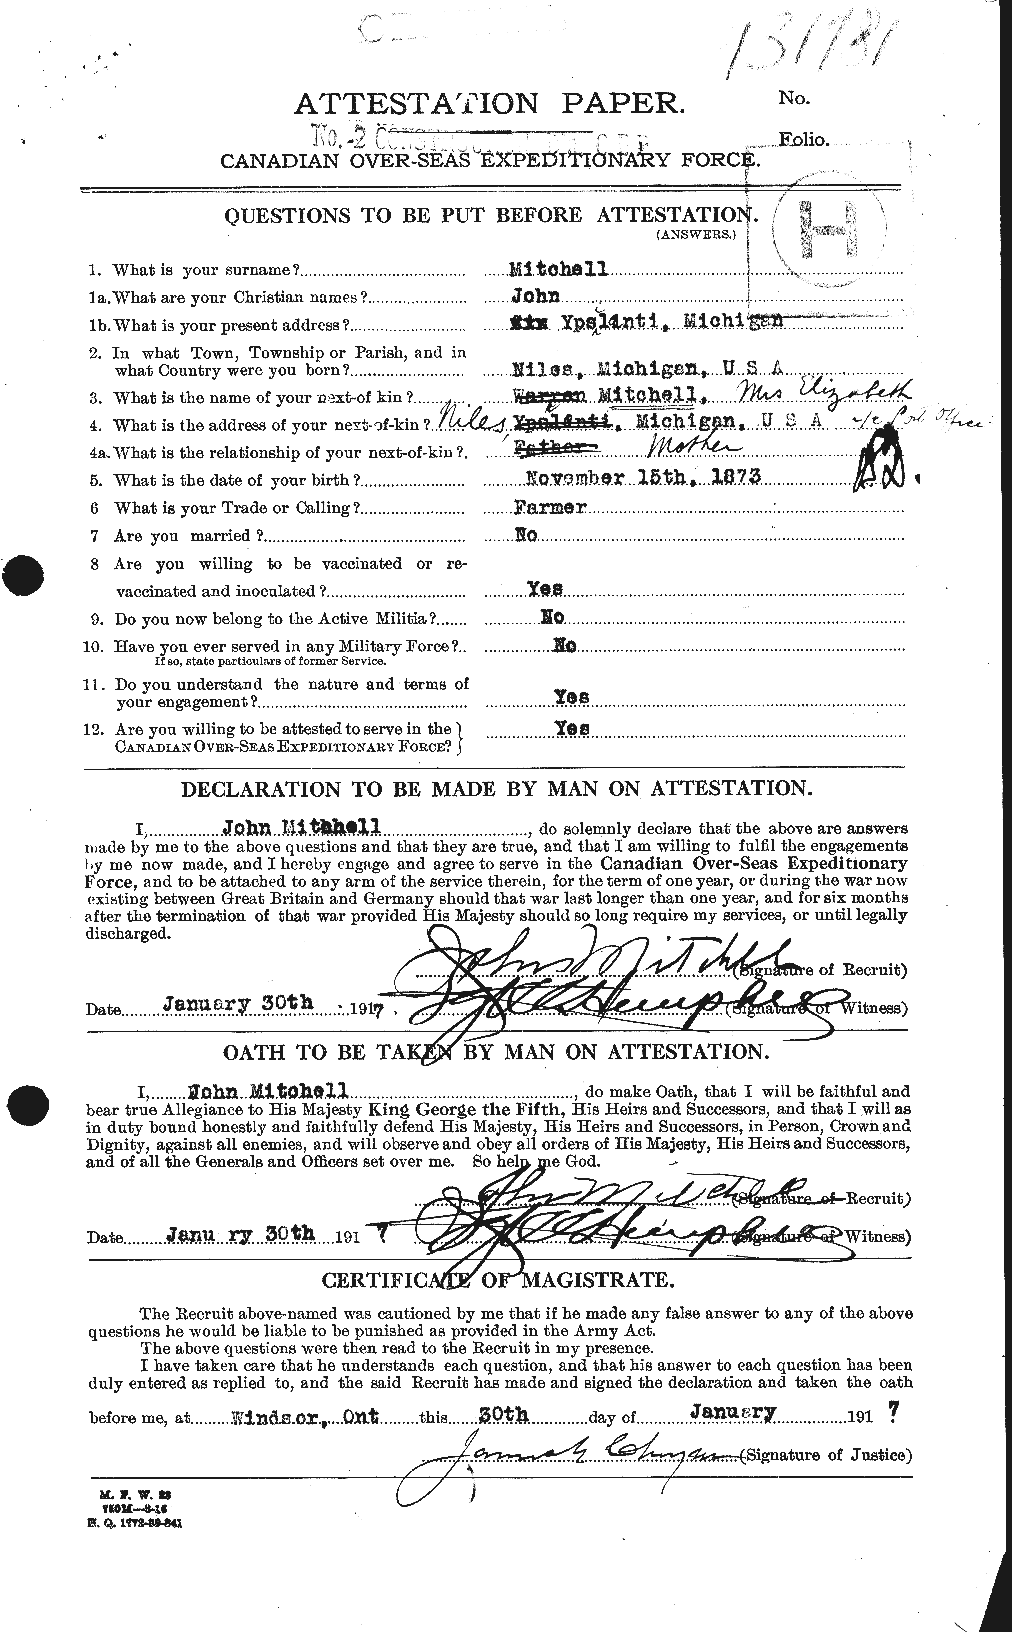 Dossiers du Personnel de la Première Guerre mondiale - CEC 499602a